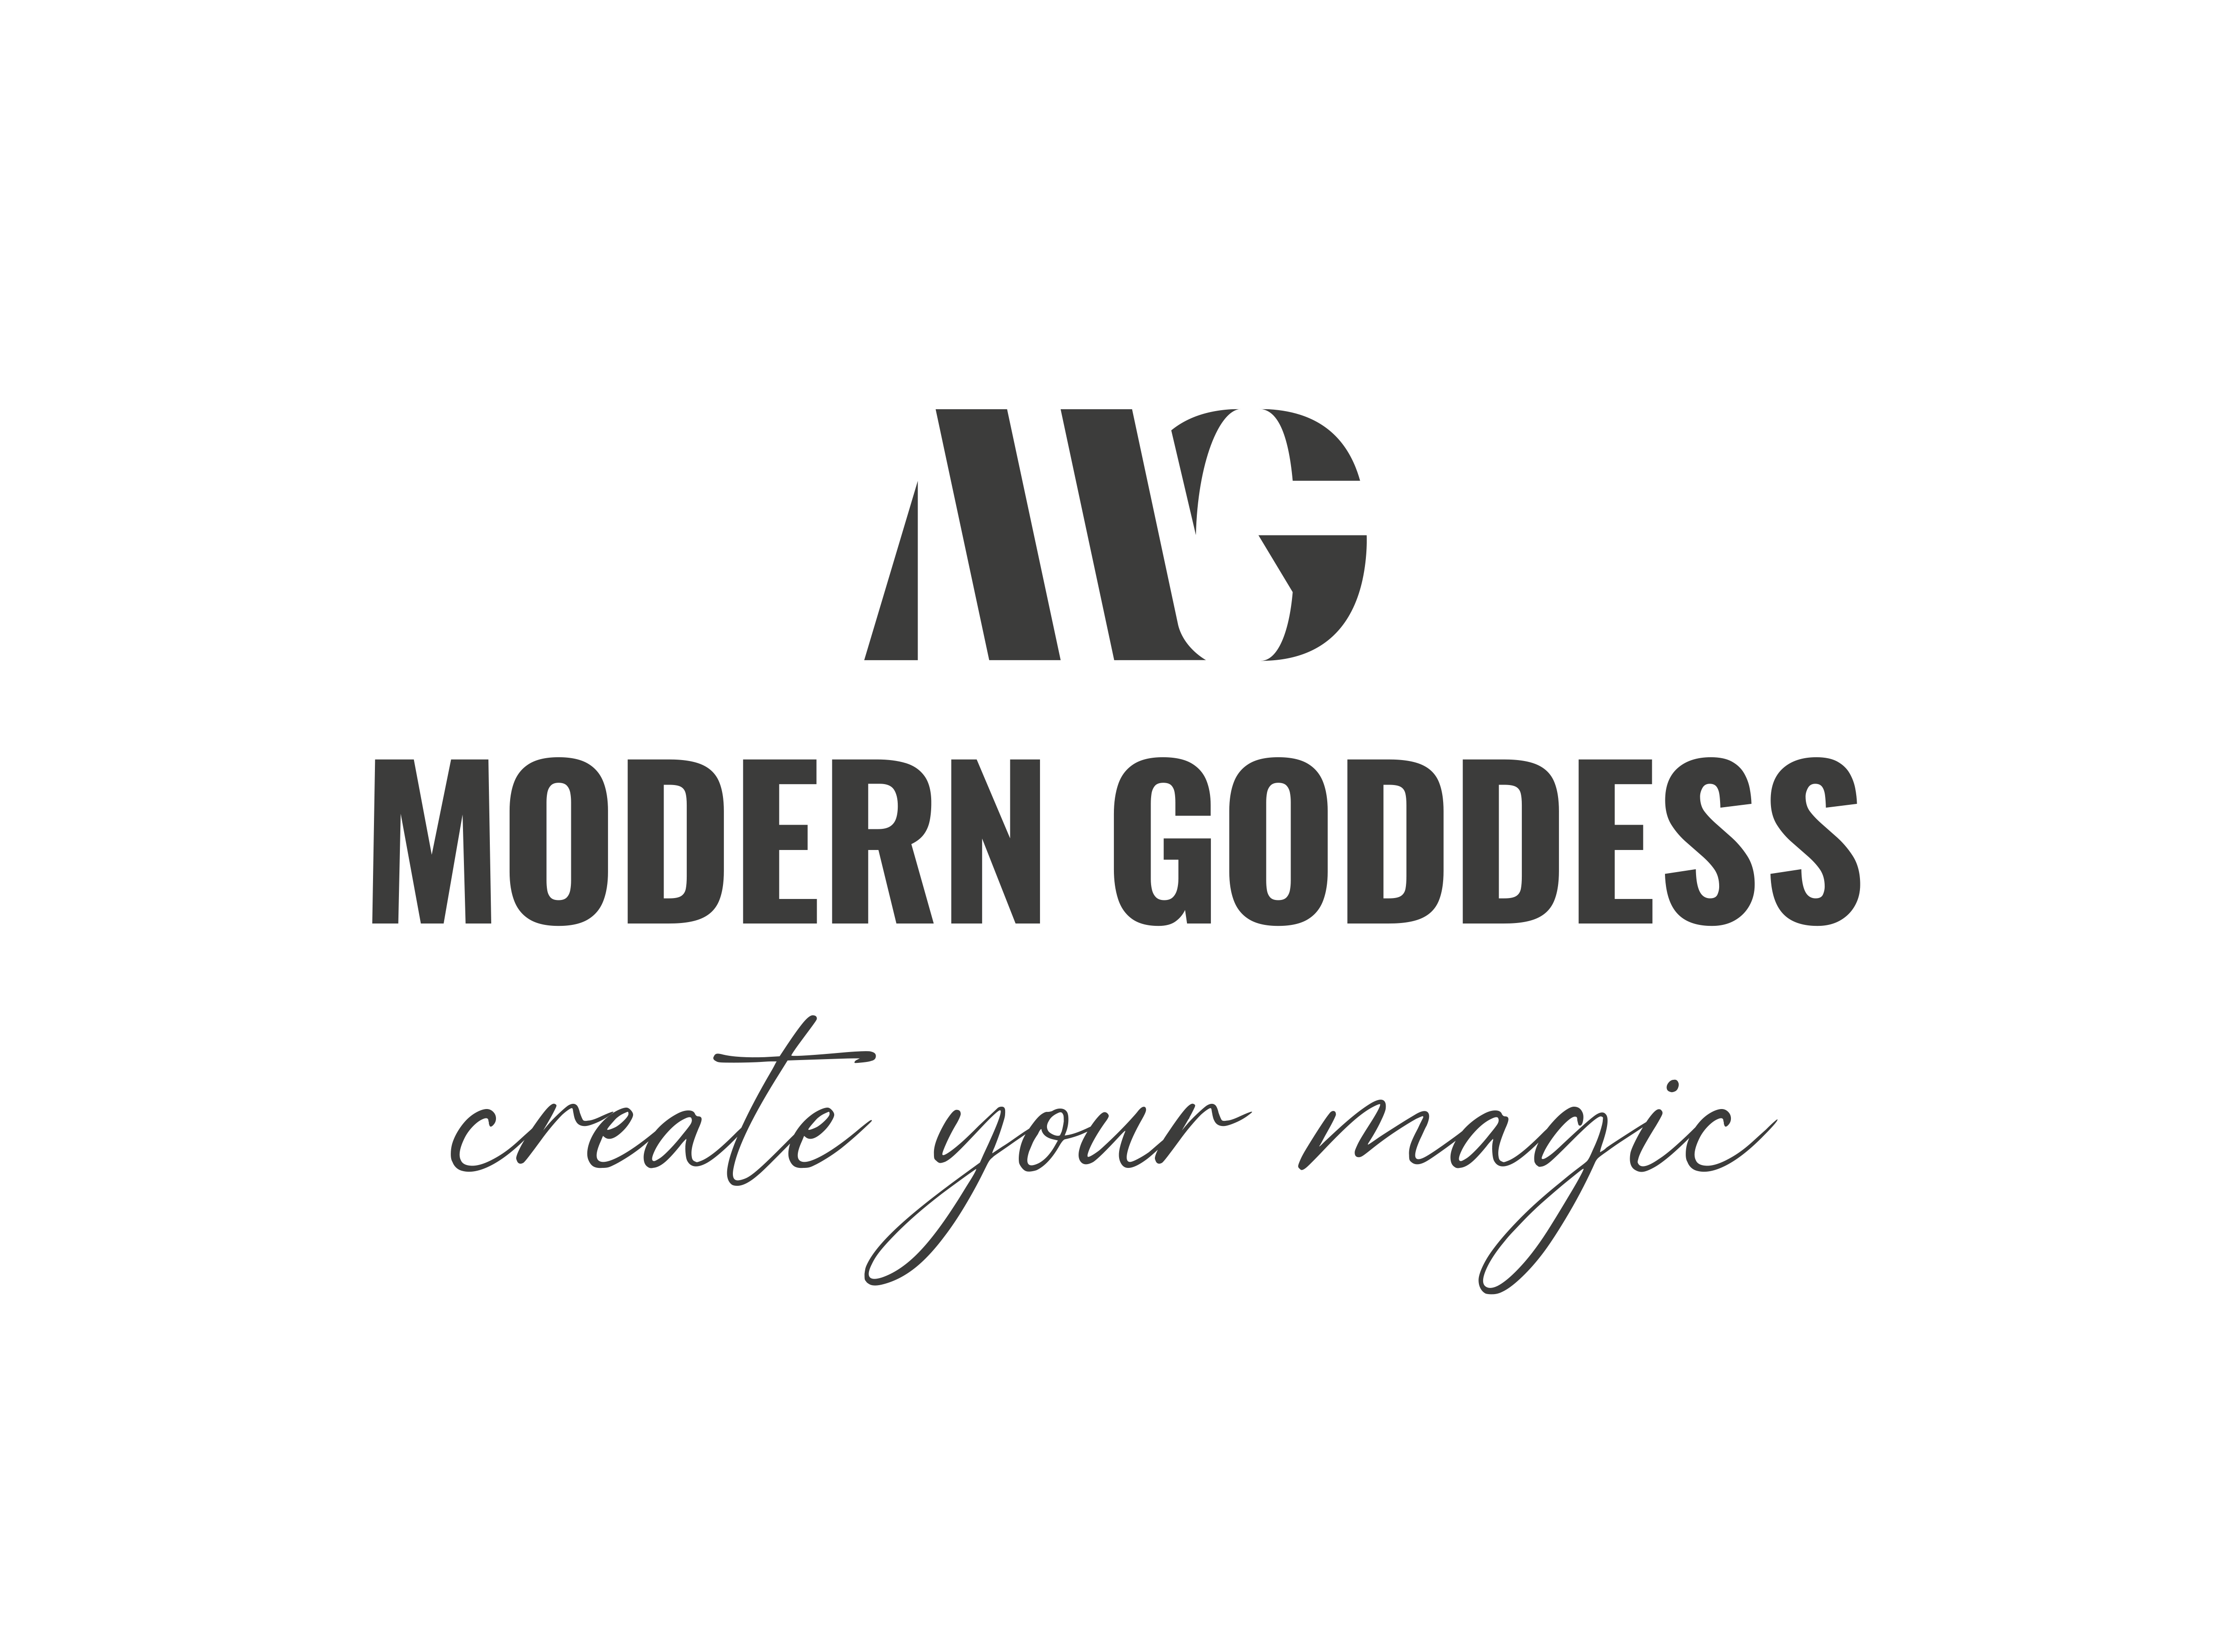 Modern Goddess